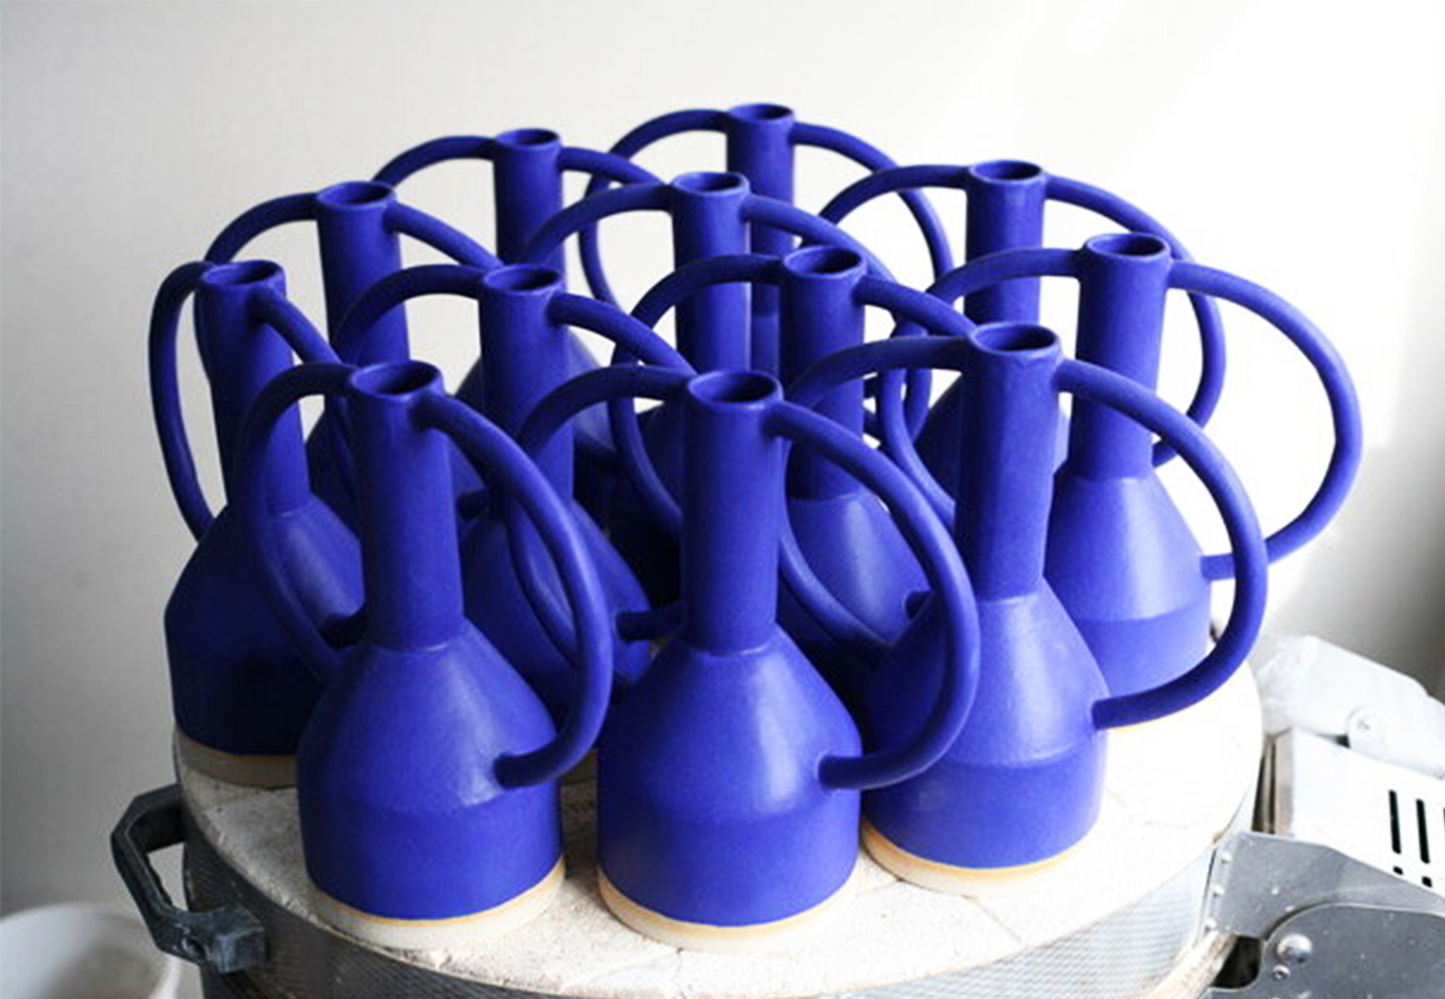 
                  
                    Jug Eared Vase Midi Blue
                  
                